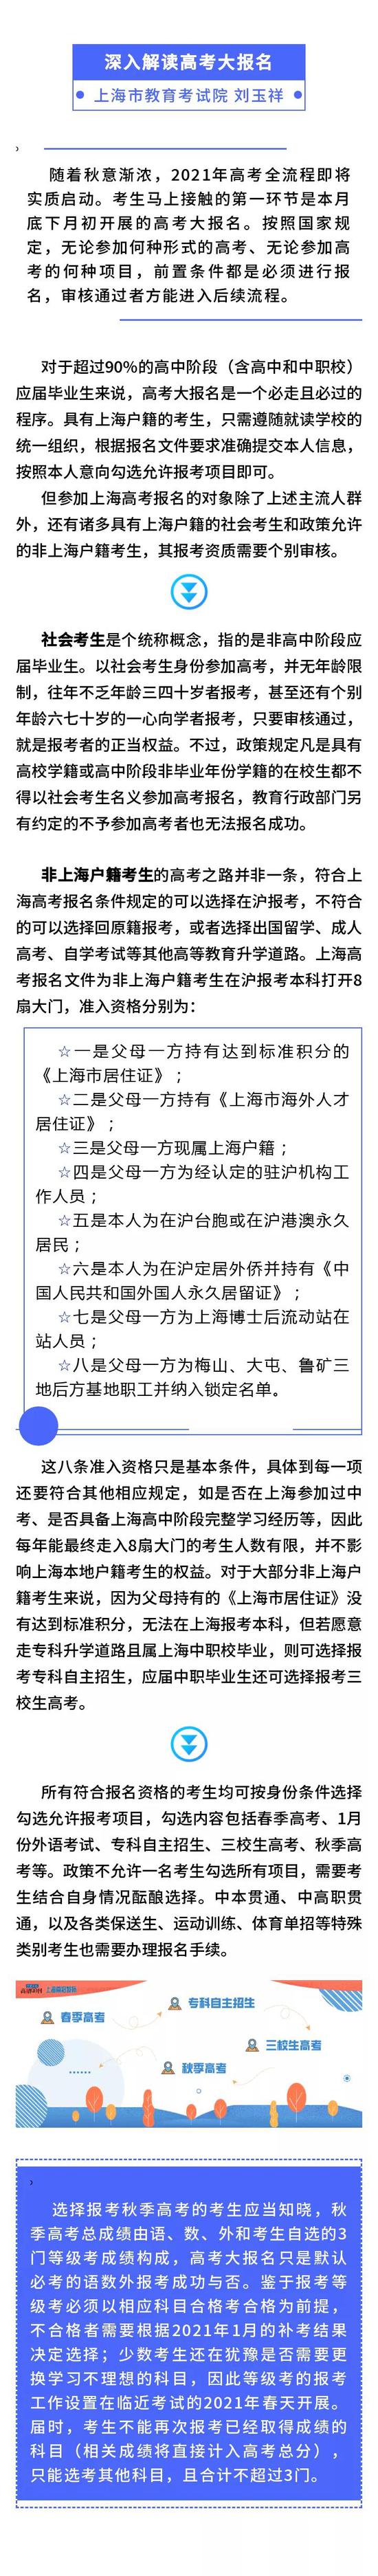 上海2021高考全流程即将启动